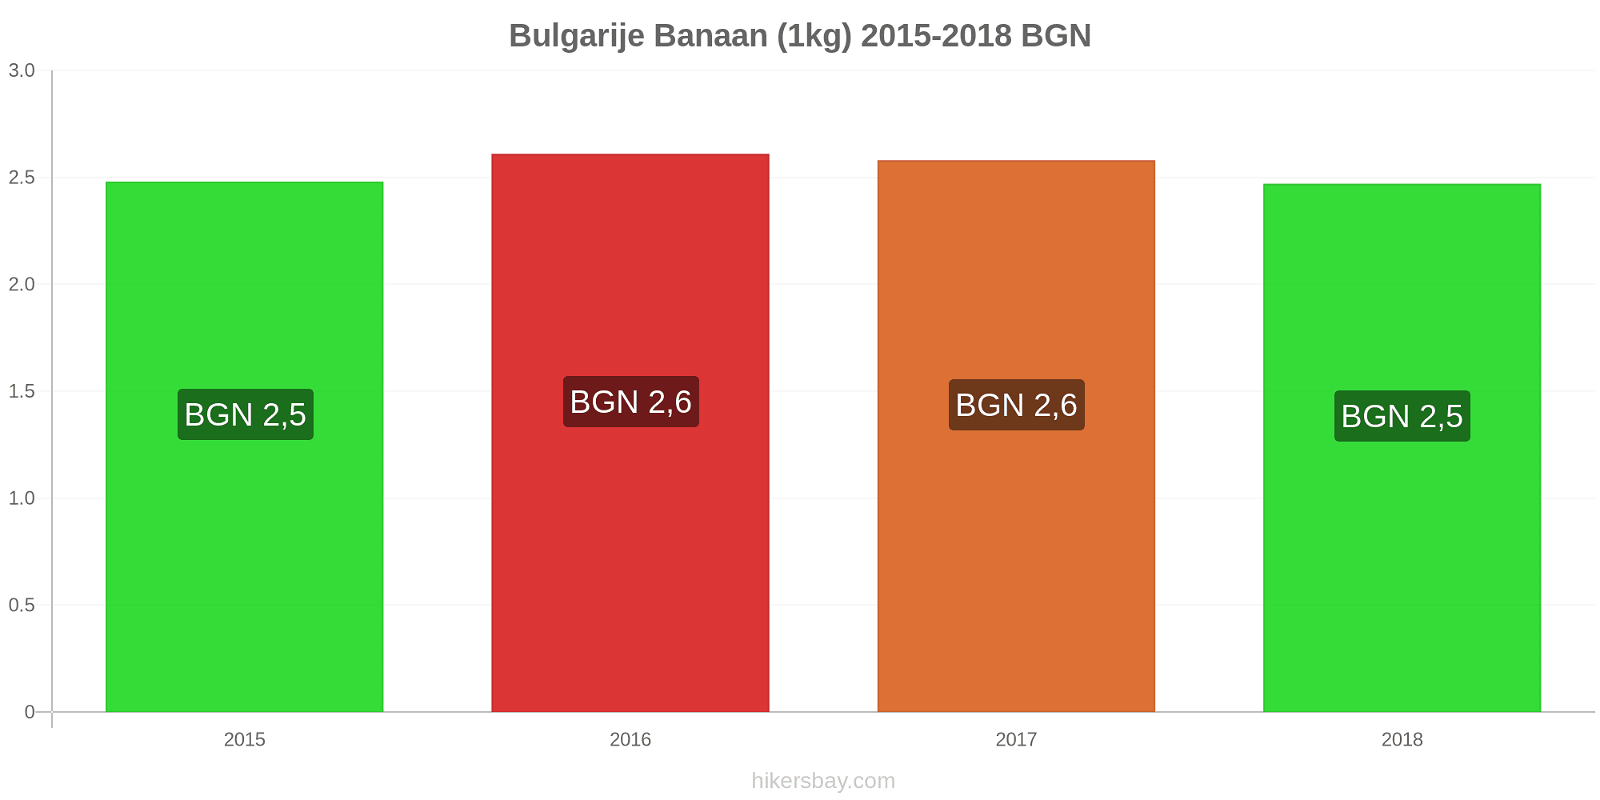 Bulgarije prijswijzigingen Bananen (1kg) hikersbay.com